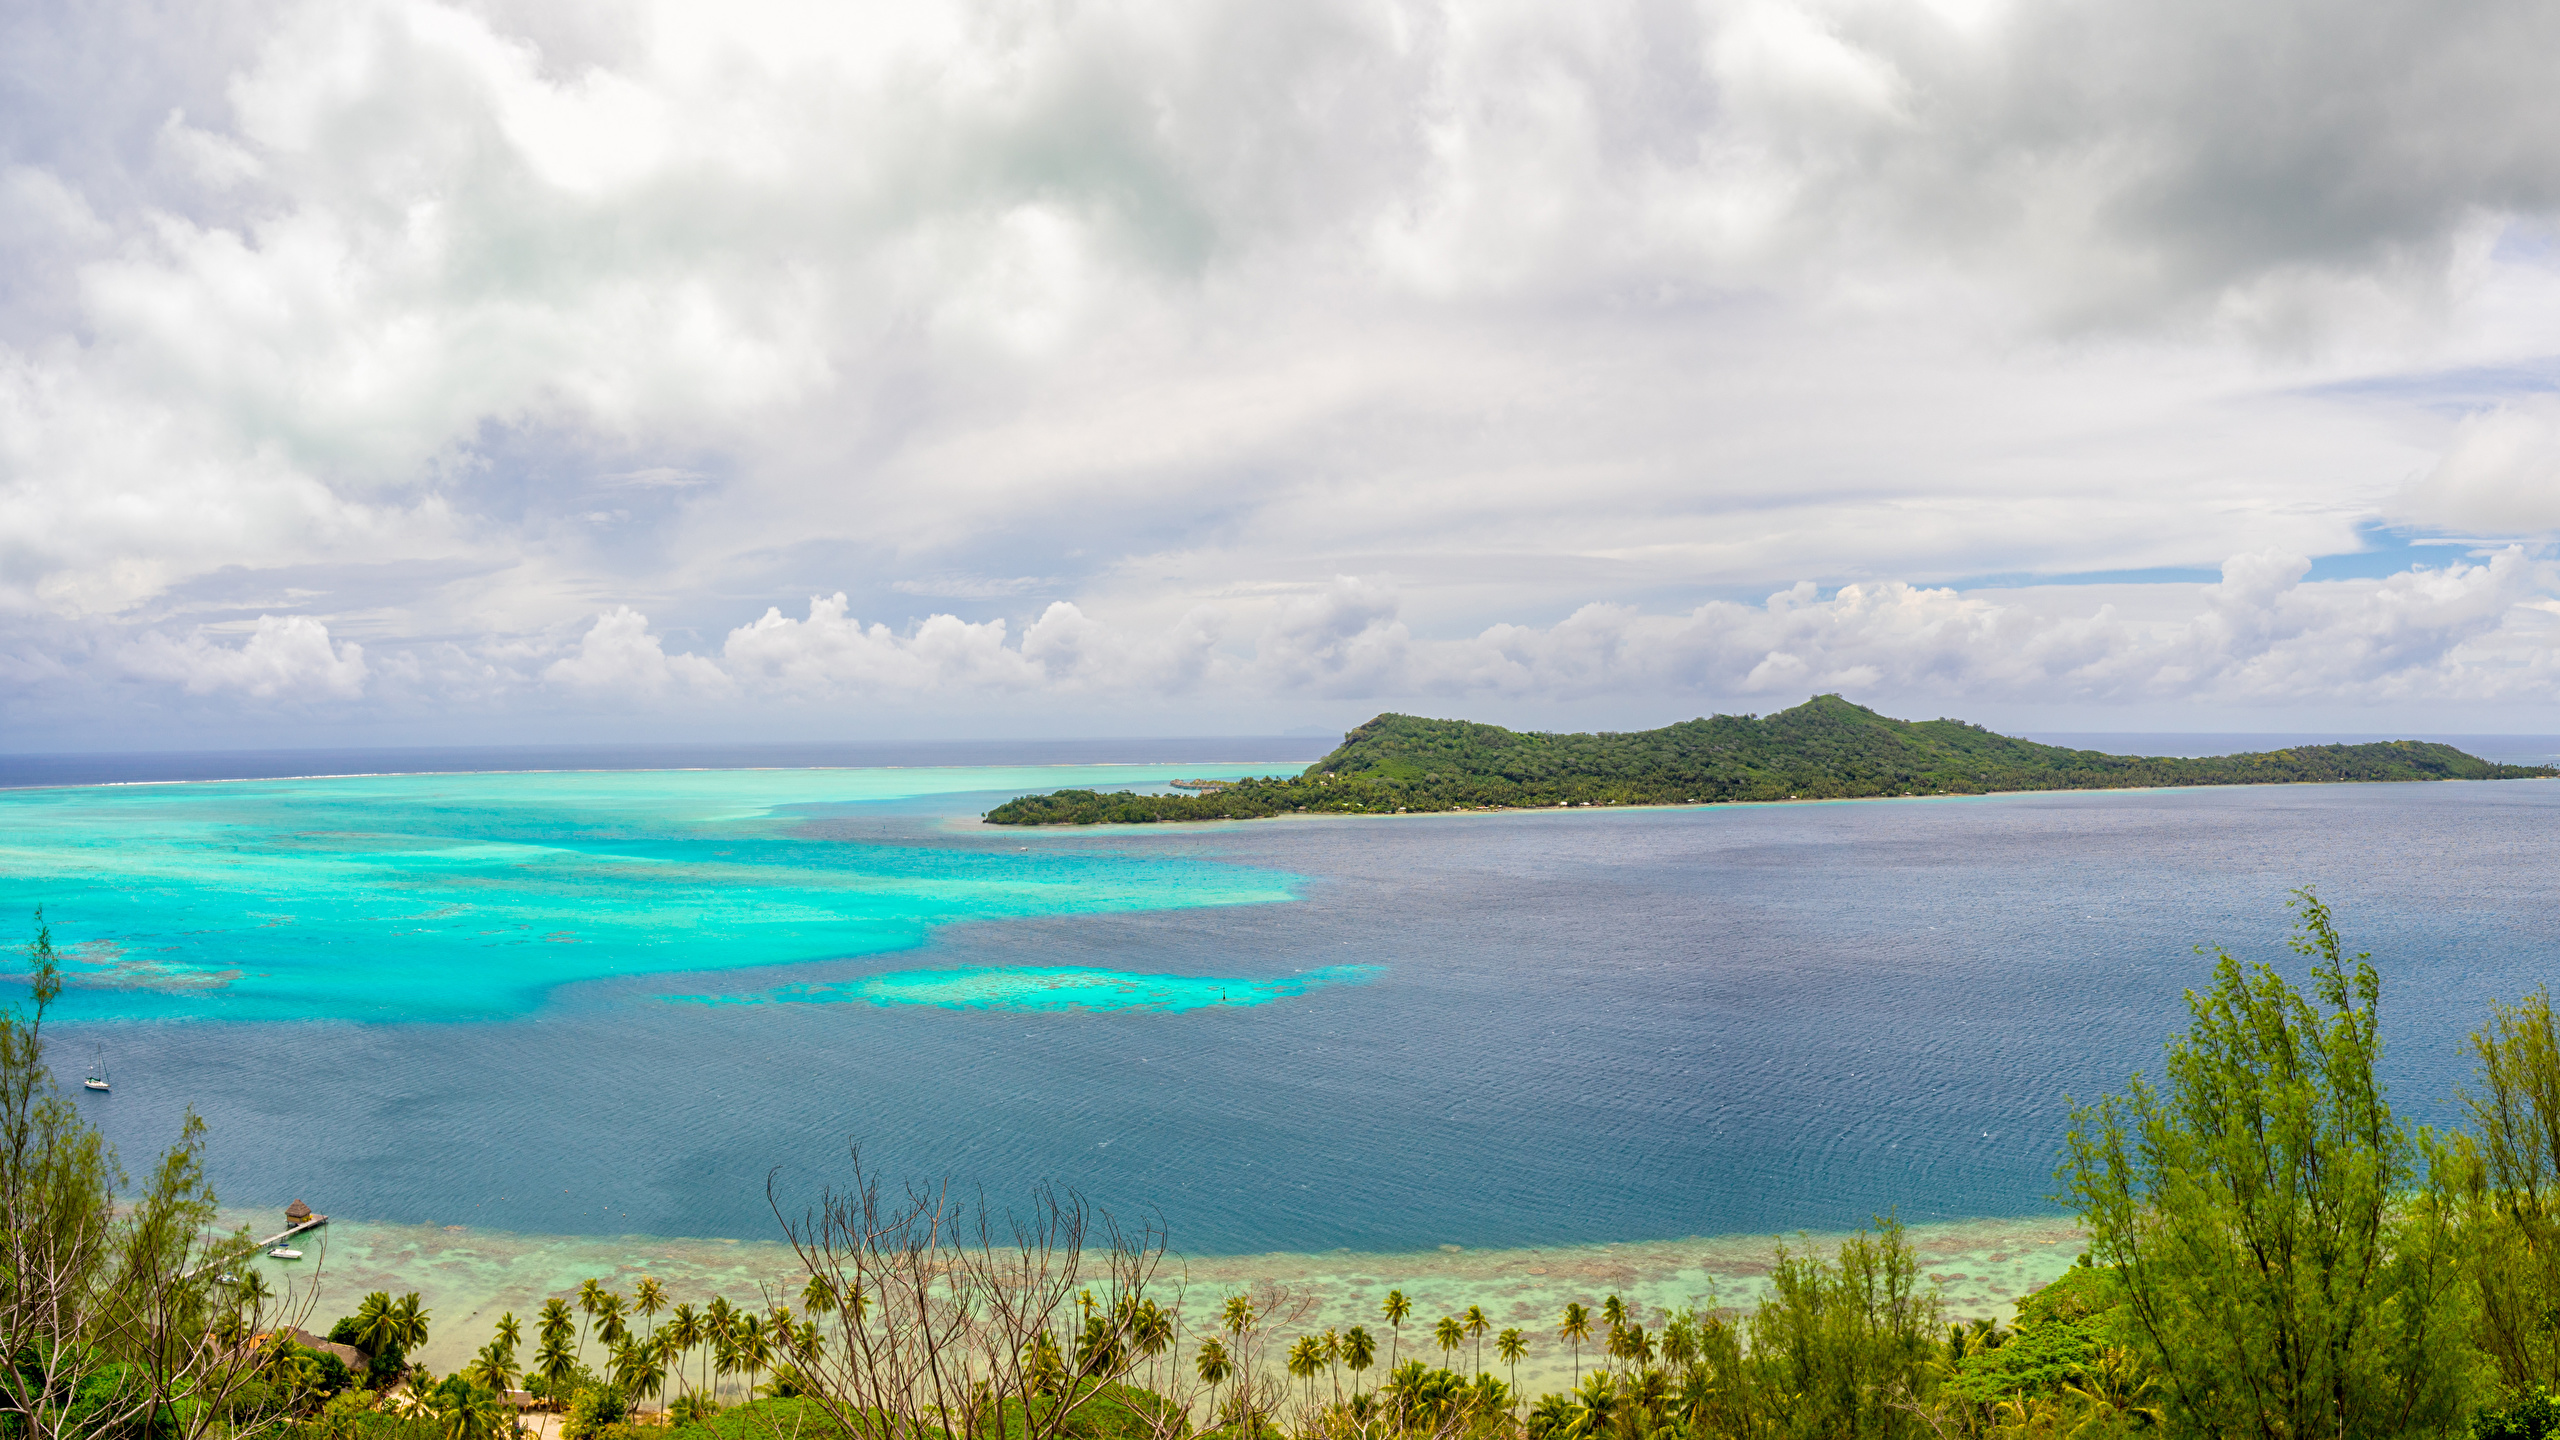 壁紙 2560x1440 フランス領ポリネシア 熱帯 風景写真 海 海岸 空 島 ボラボラ島 自然 ダウンロード 写真